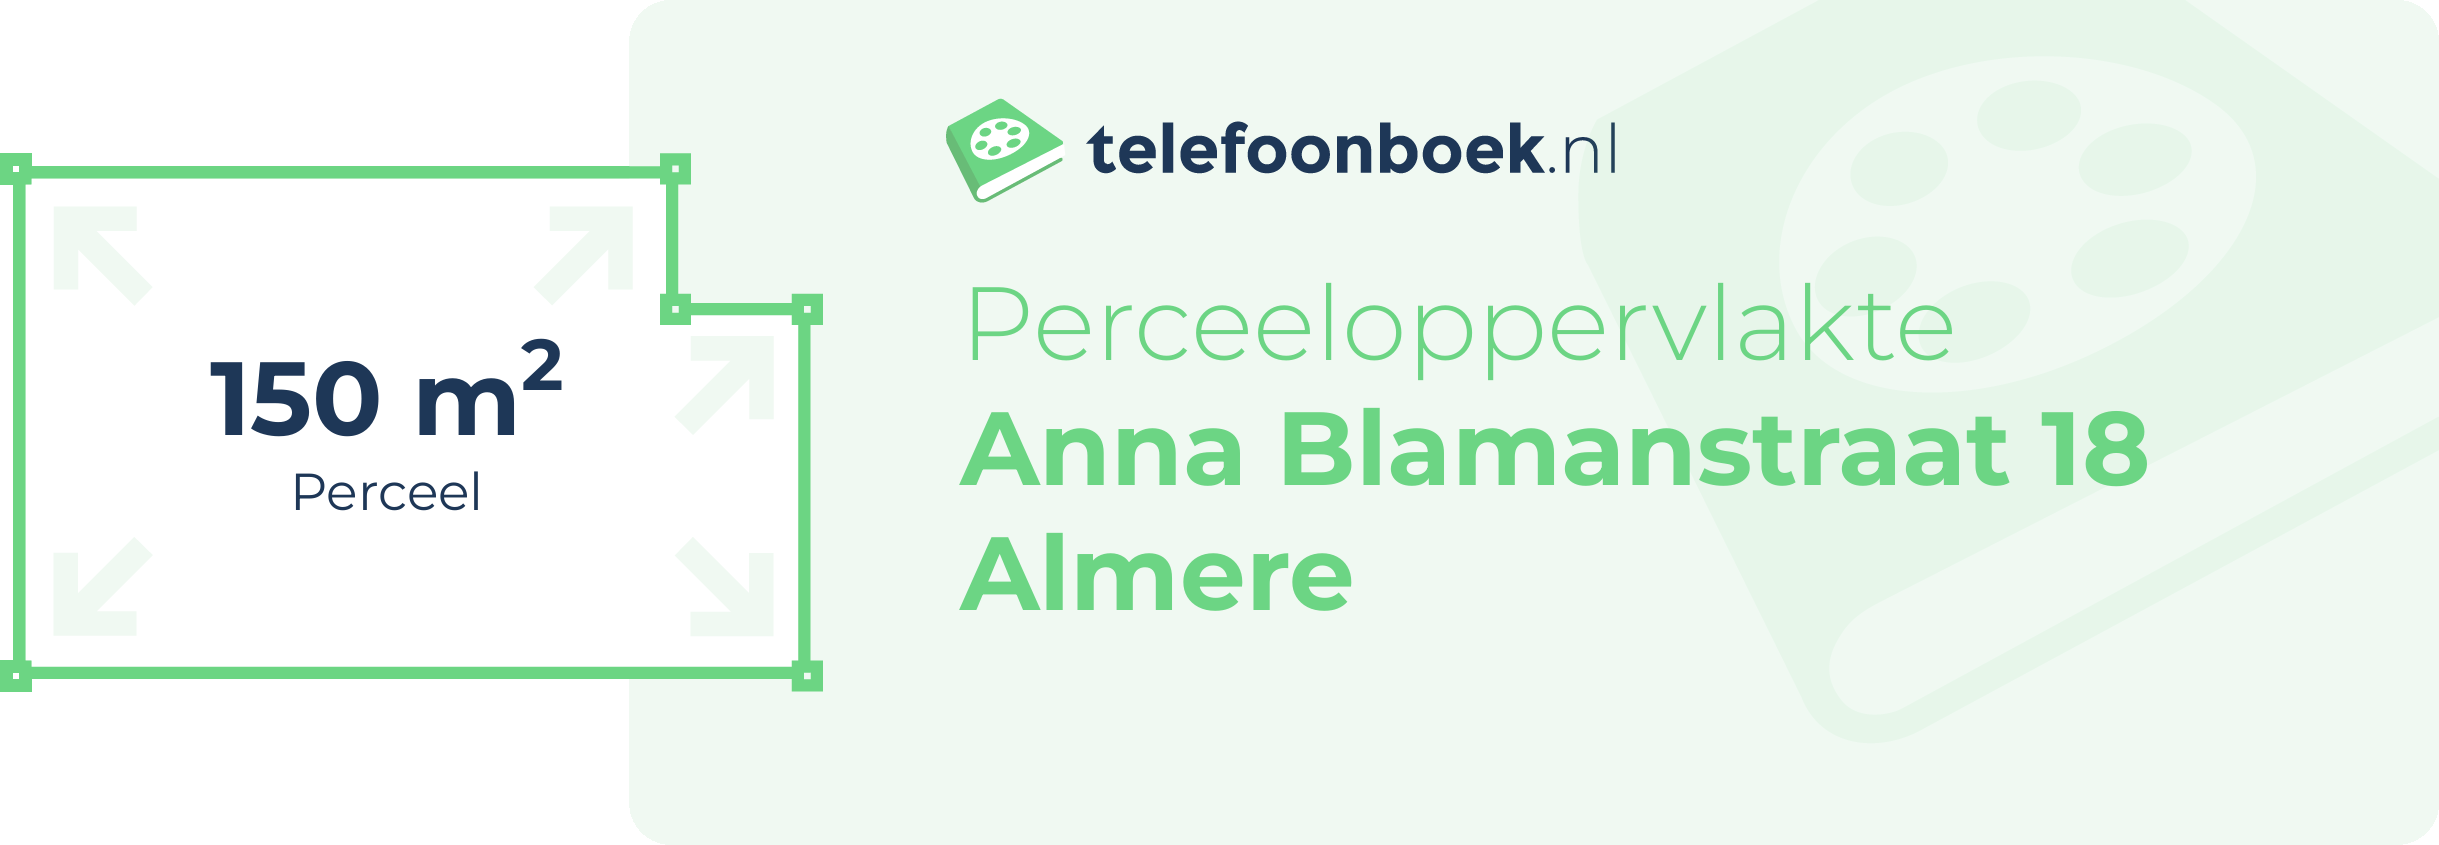 Perceeloppervlakte Anna Blamanstraat 18 Almere